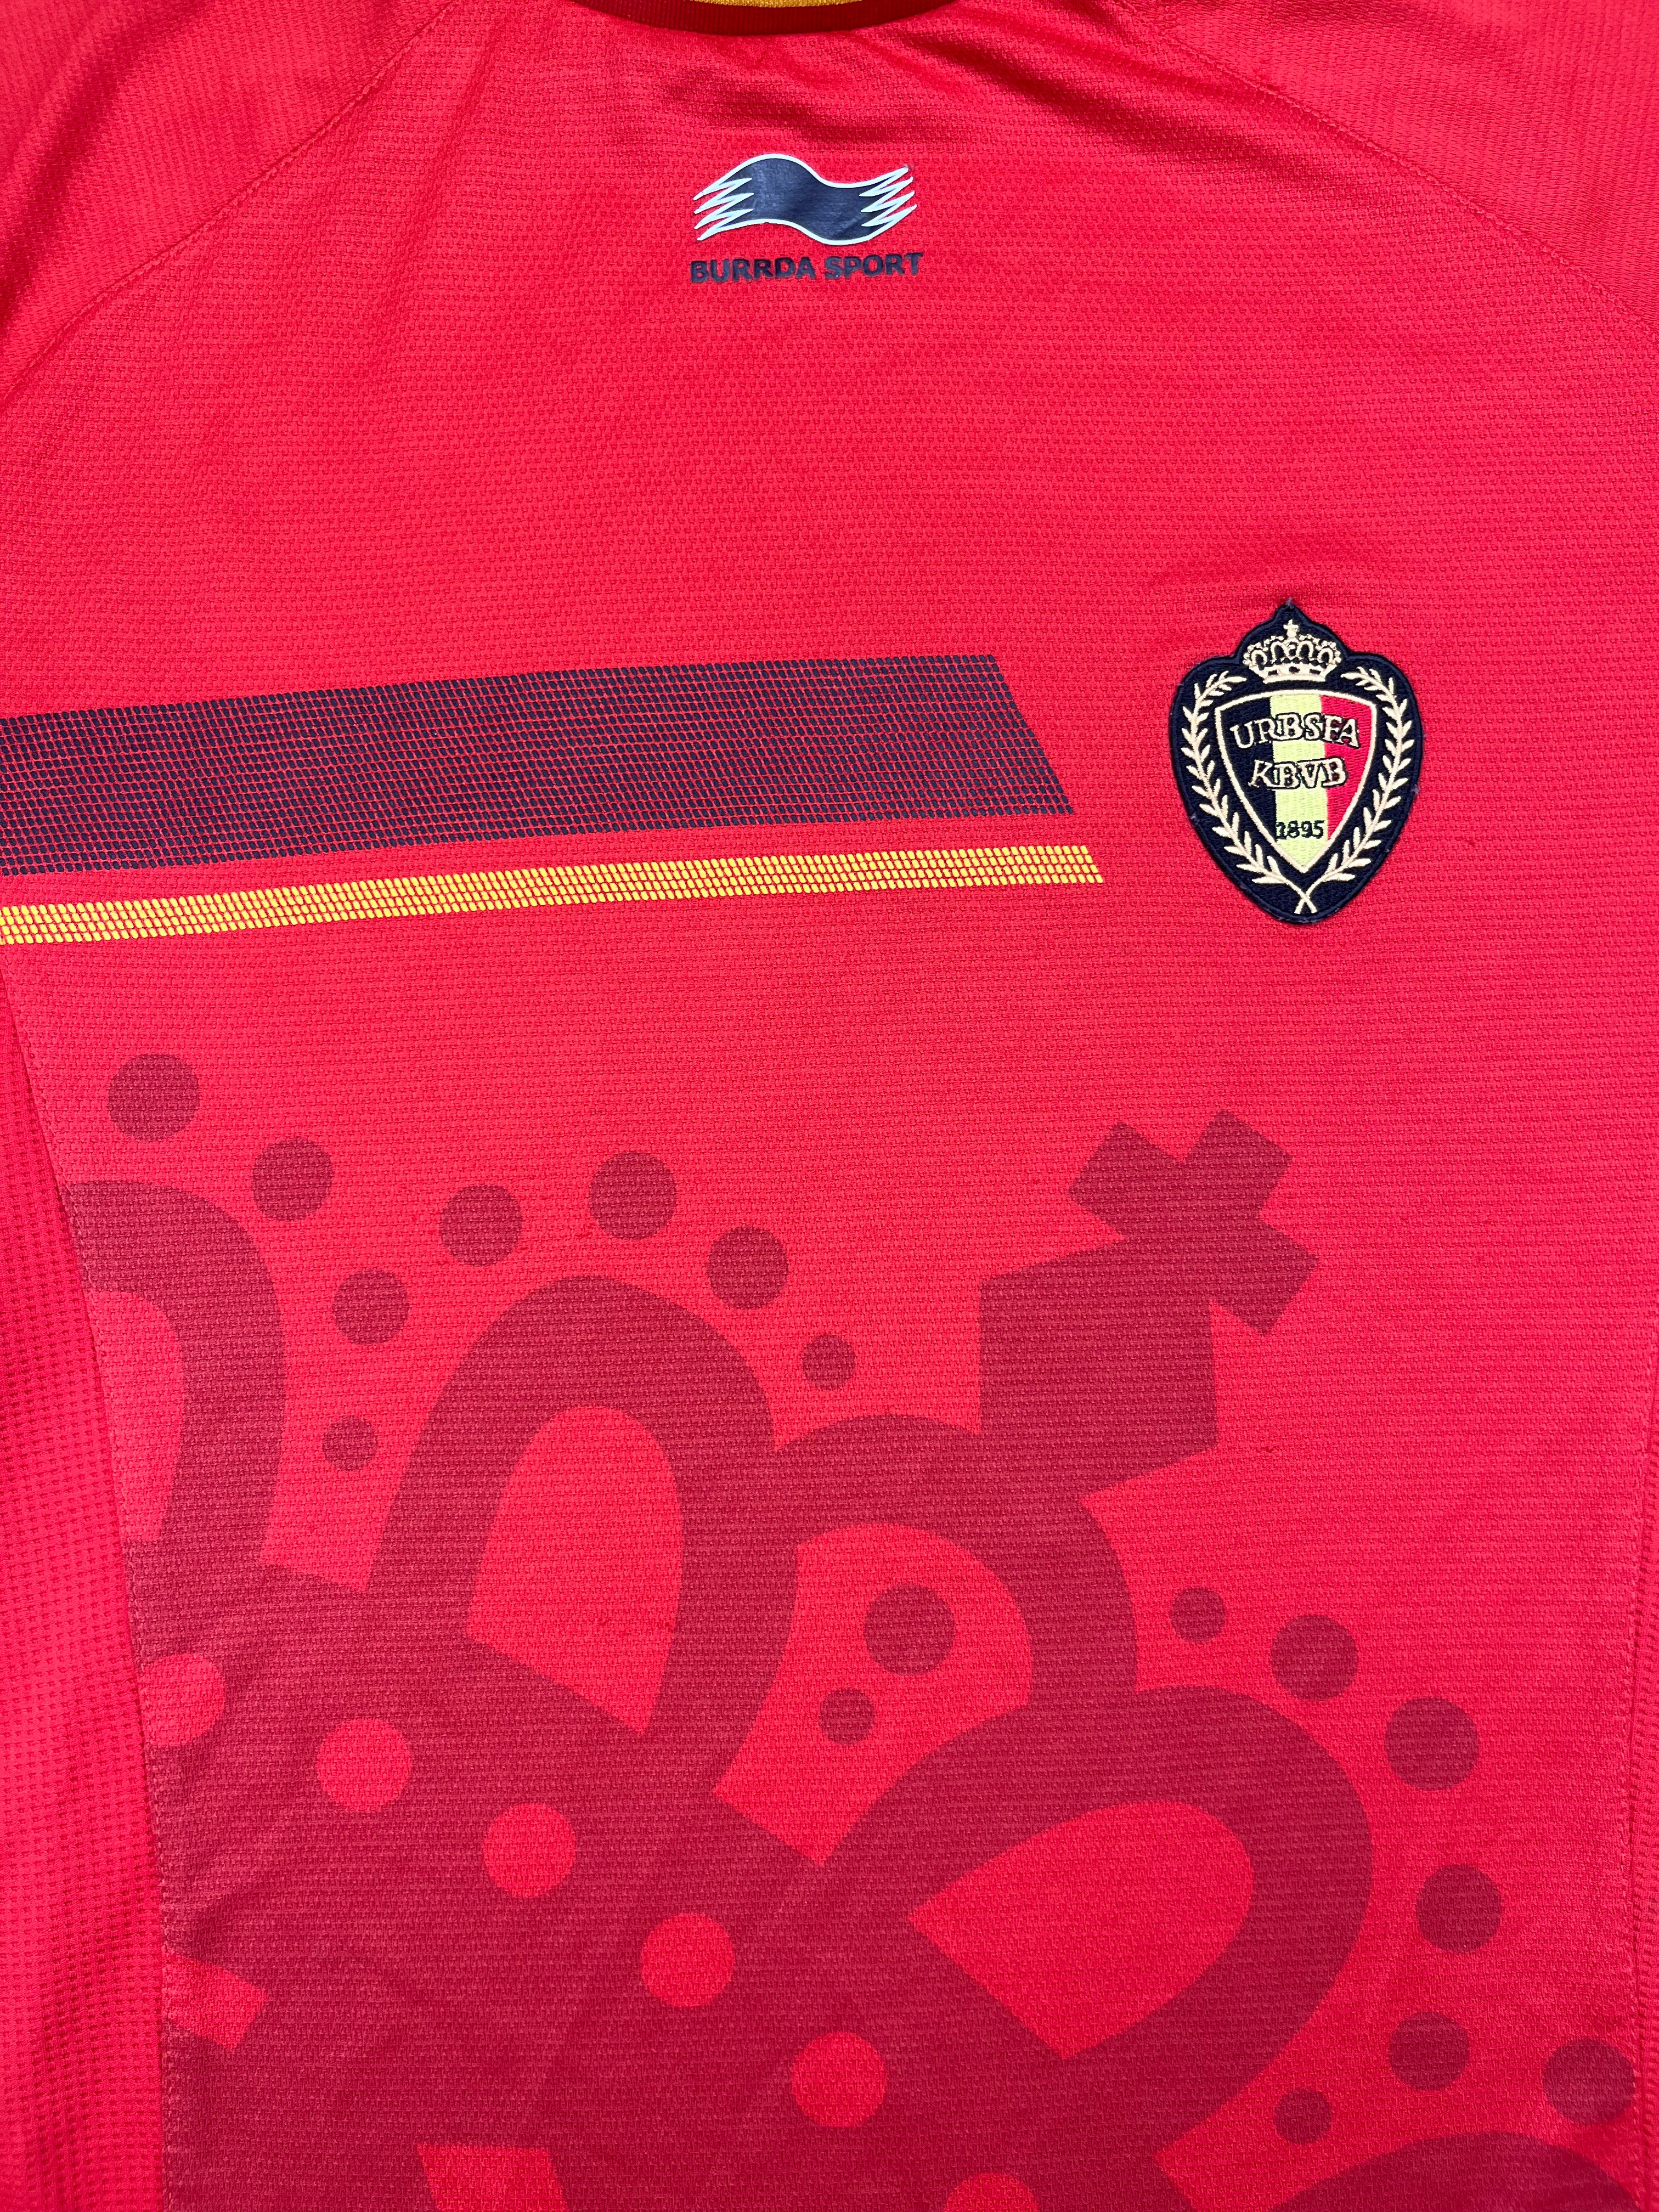 Camiseta de local de Bélgica 2014/15 (XL) 8/10